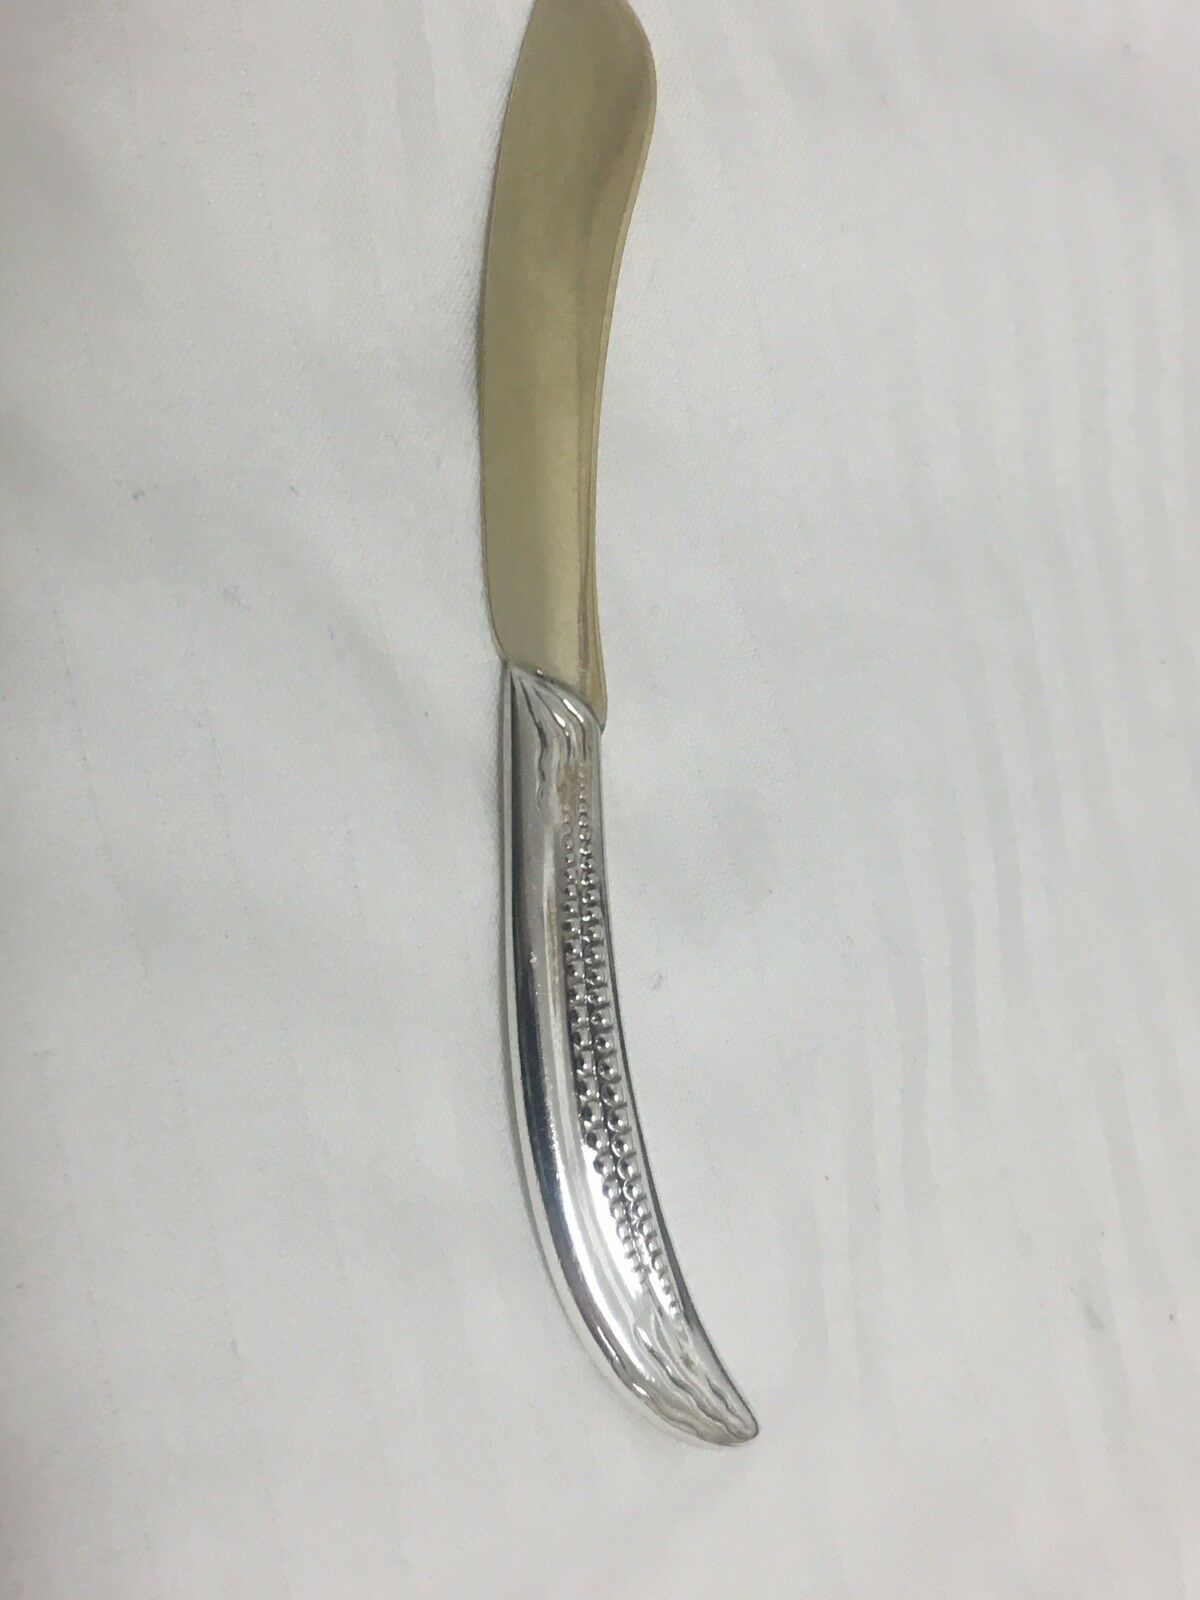 12 Sterling Silver Tiffany & Co Corn Vine Pea Pod Solid Knives Spreaders C1880